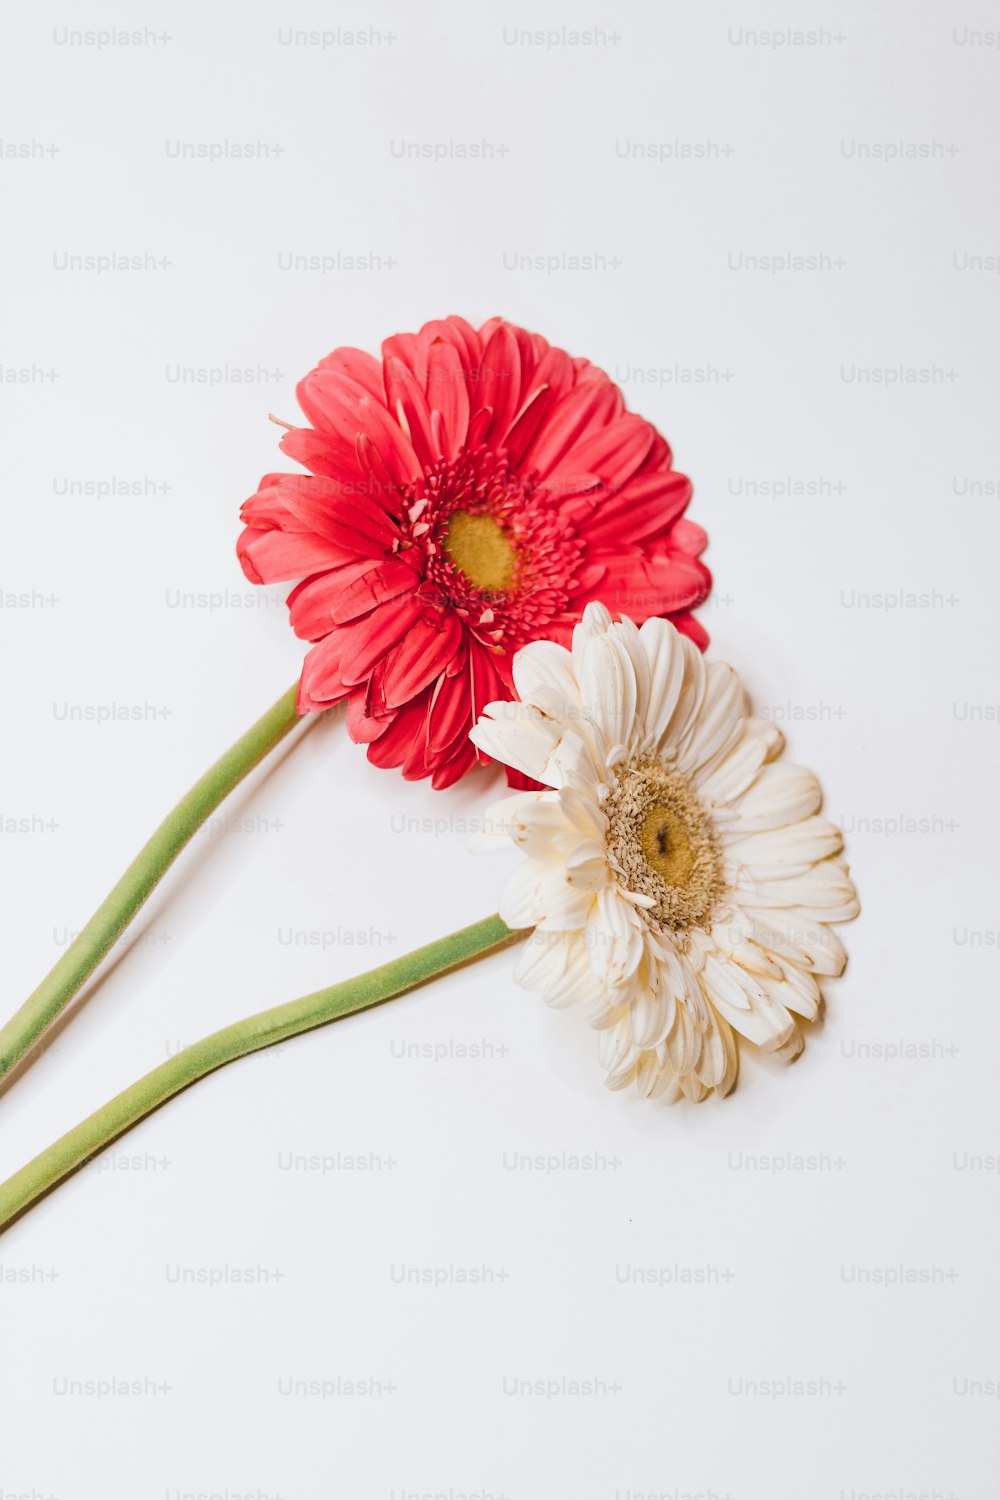 1K+ Floral Design Pictures  Download Free Images on Unsplash